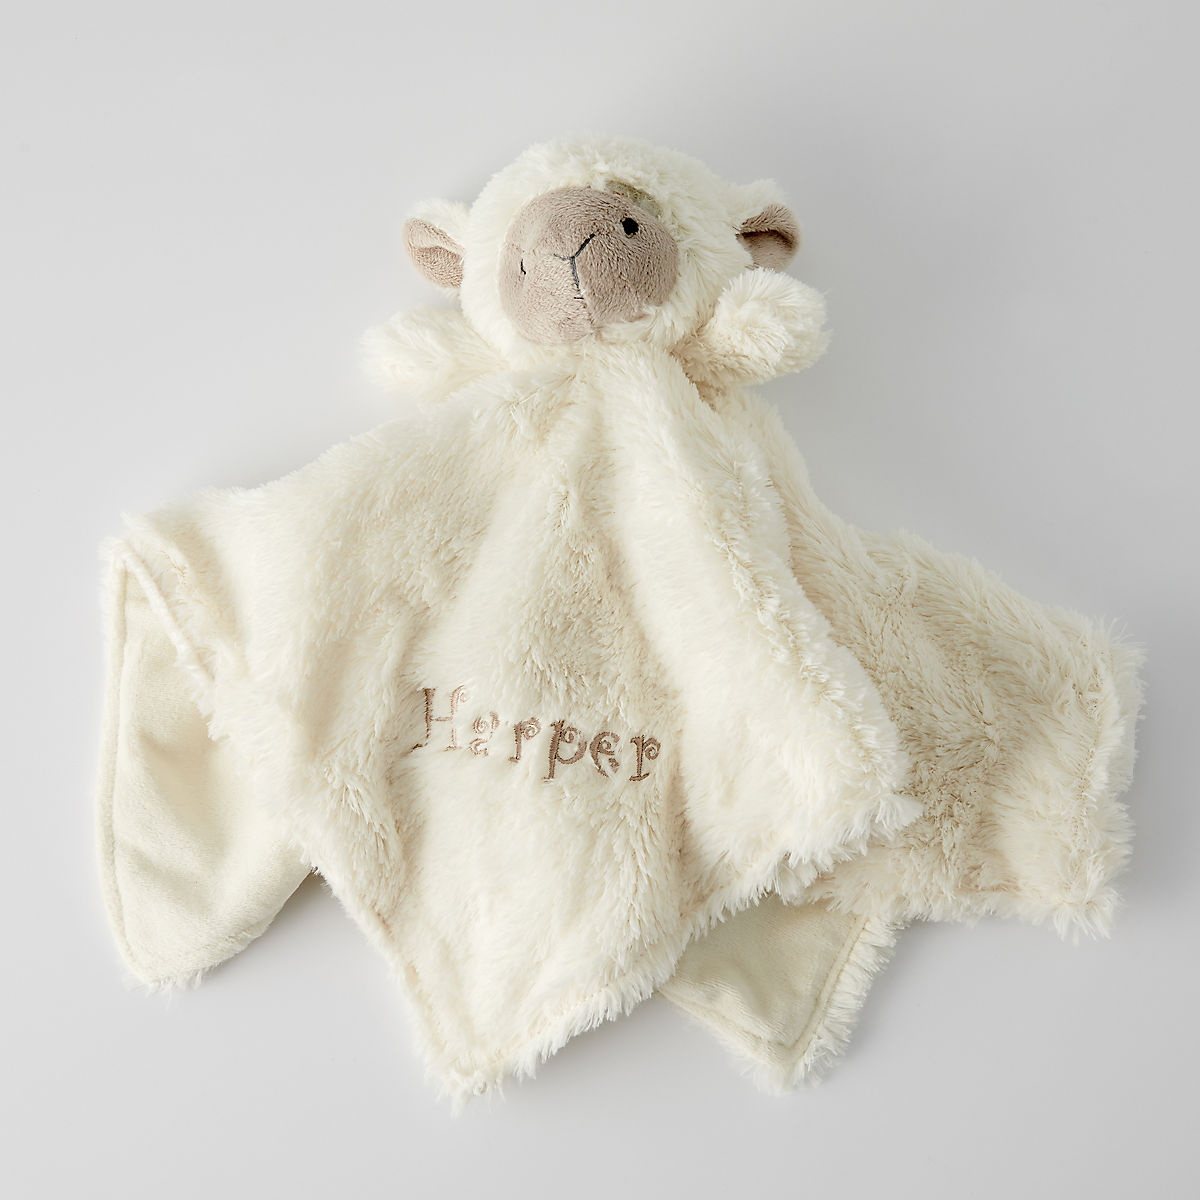 Personalized White Stuffed Plush~ Lamb ~Free Shipping 